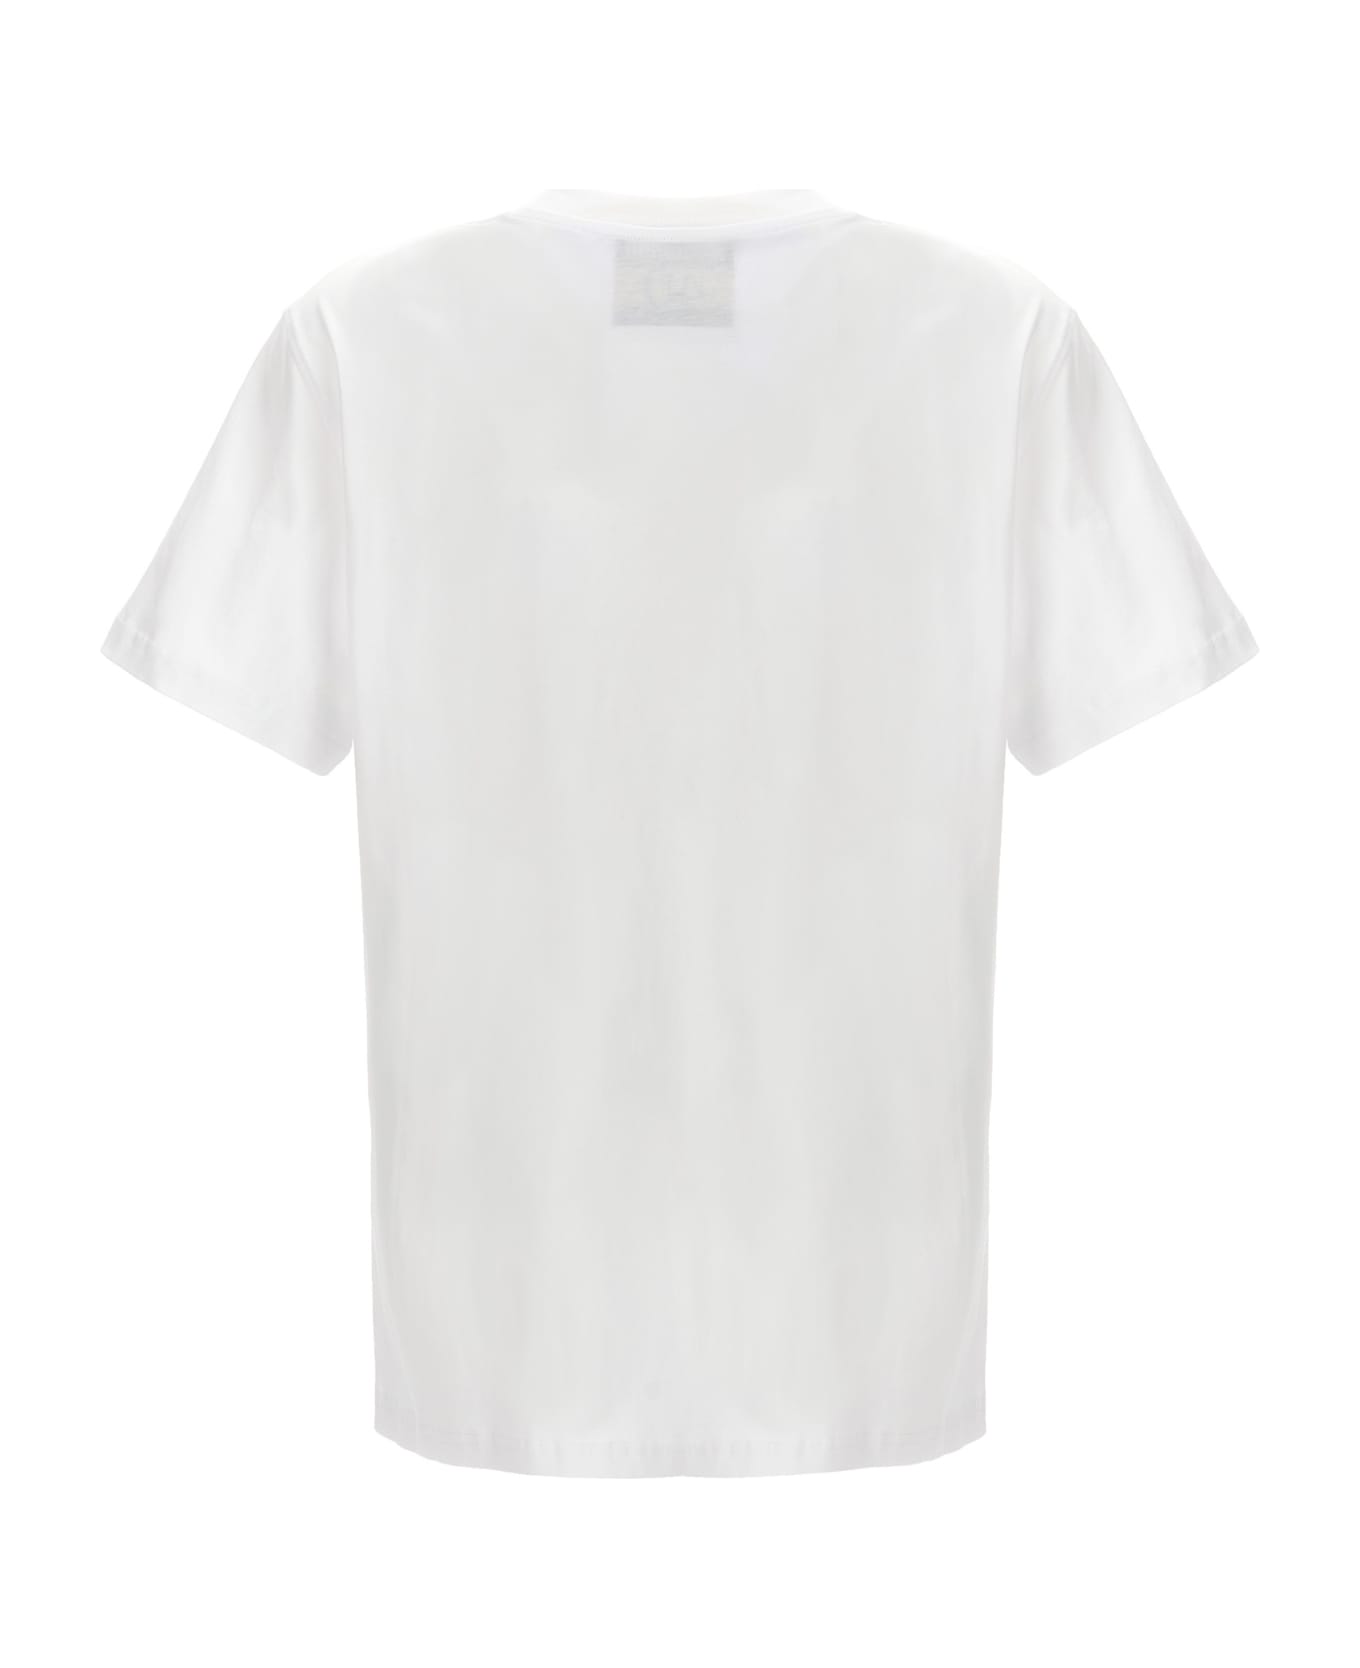 Moschino '40 Years Of Love' T-shirt - White Tシャツ